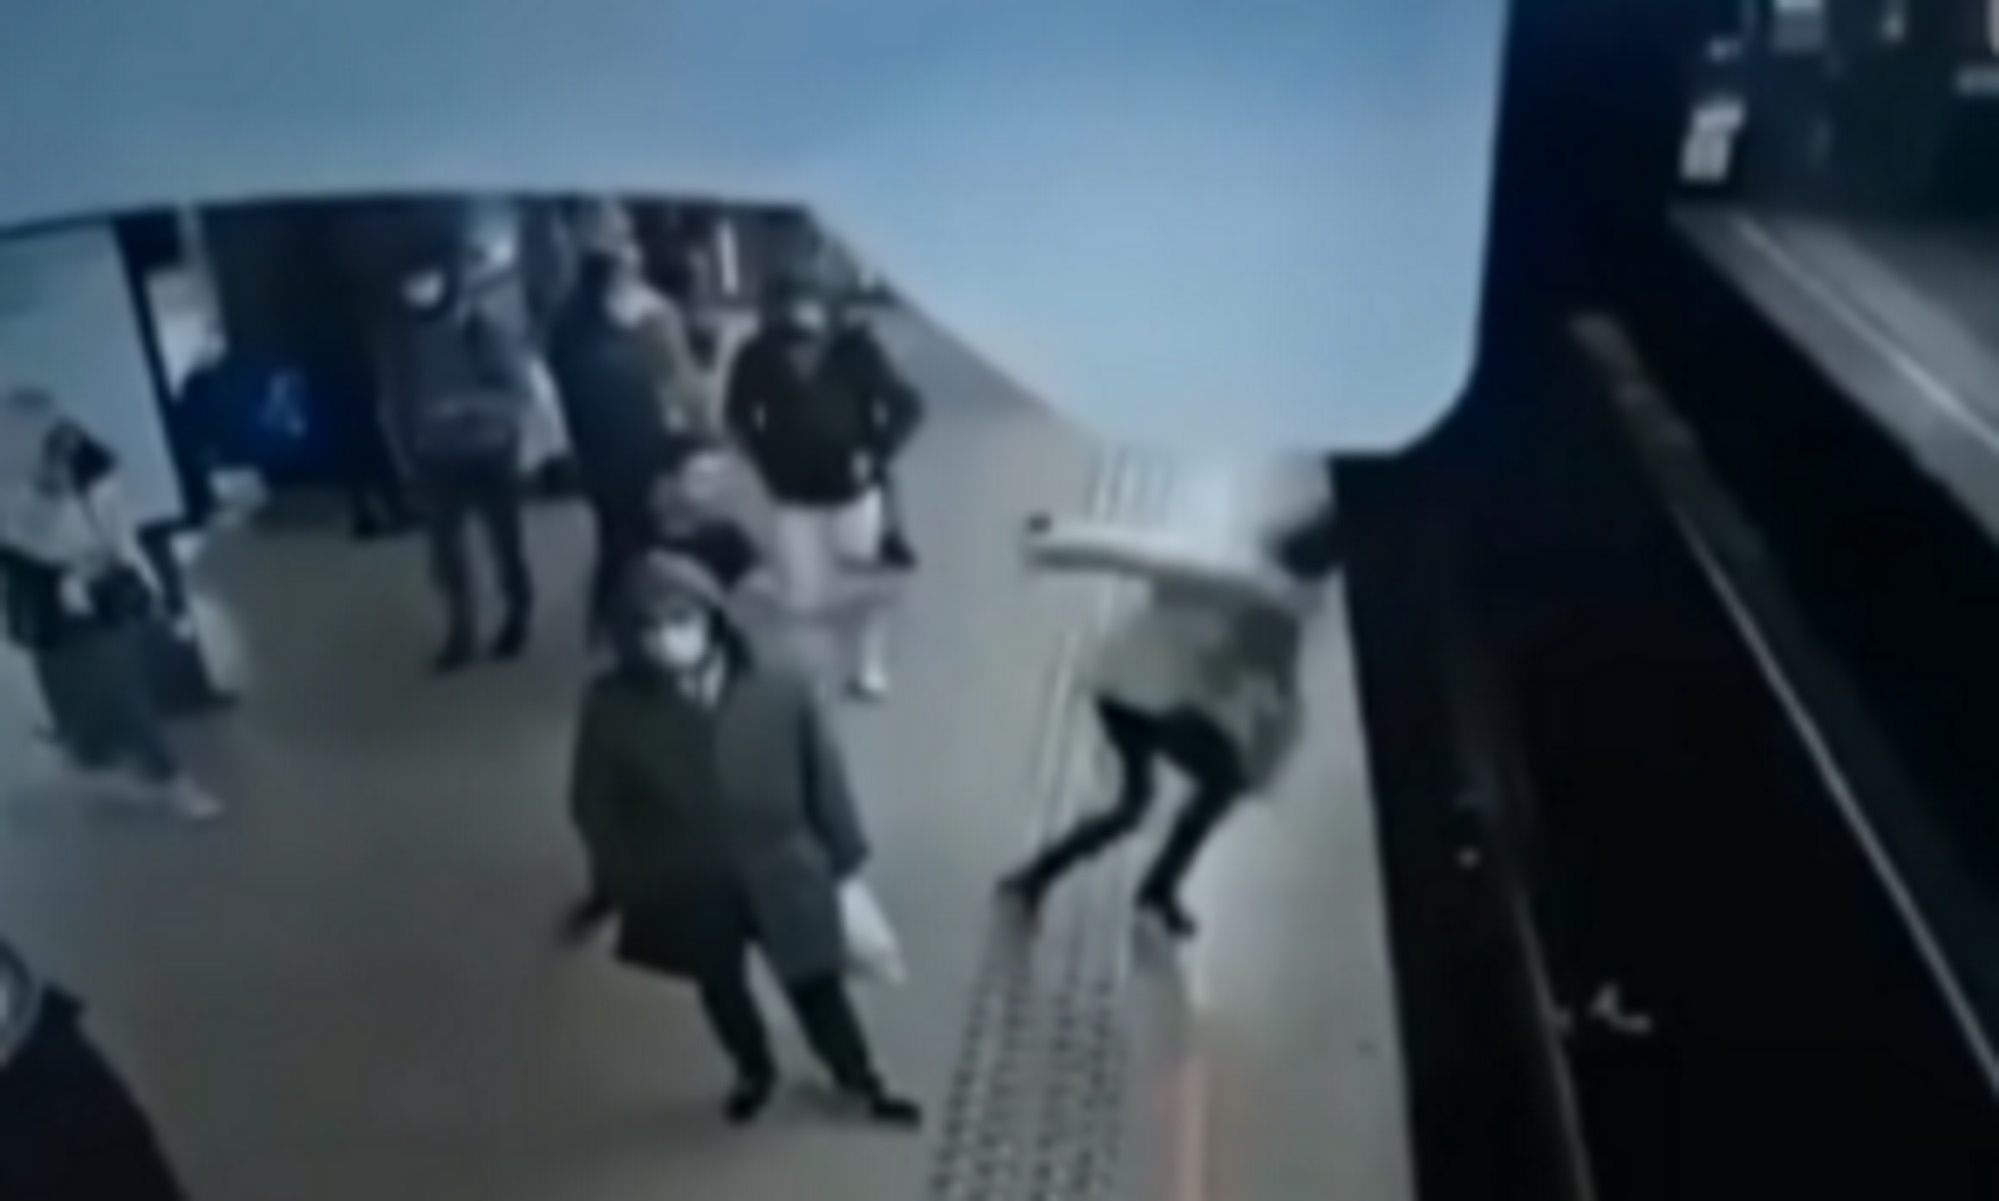 Βέλγιο: Έσπρωξε γυναίκα στις γραμμές του Μετρό – Βίντεο από την πτώση μπροστά στον συρμό που ερχόταν